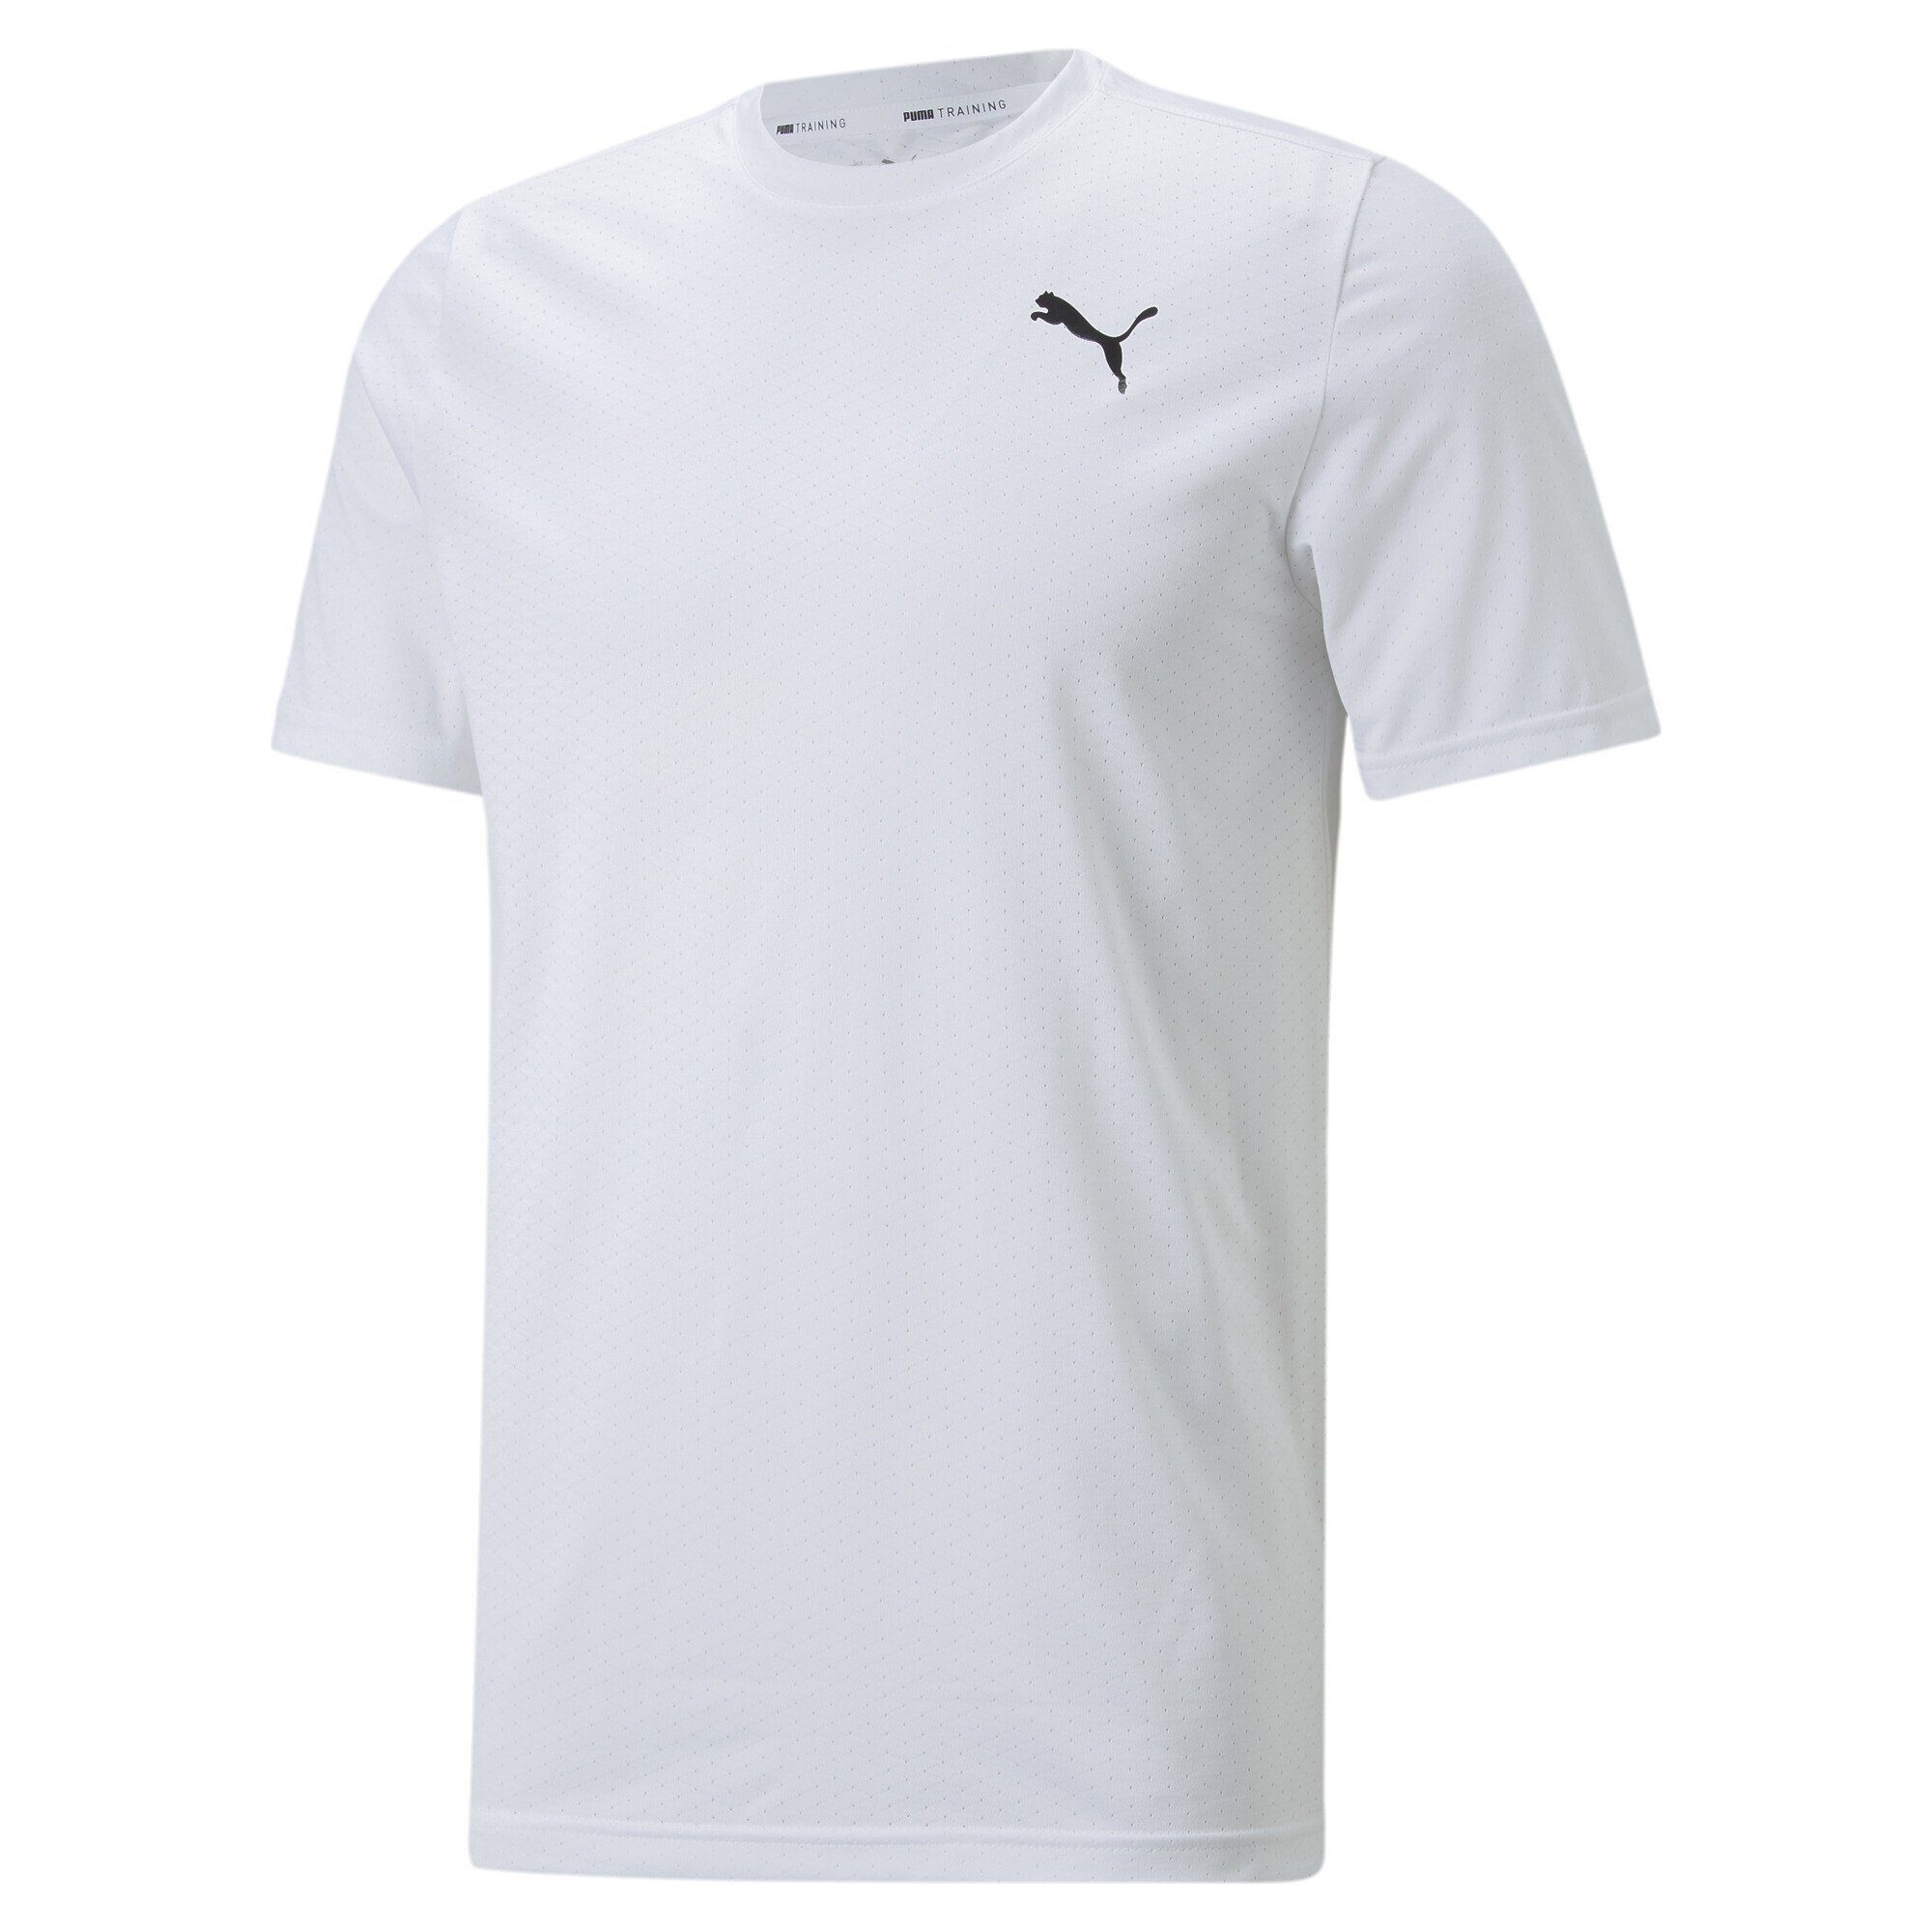 PUMA Trainingsshirt Favourite Blaster Trainingsshirt Herren White